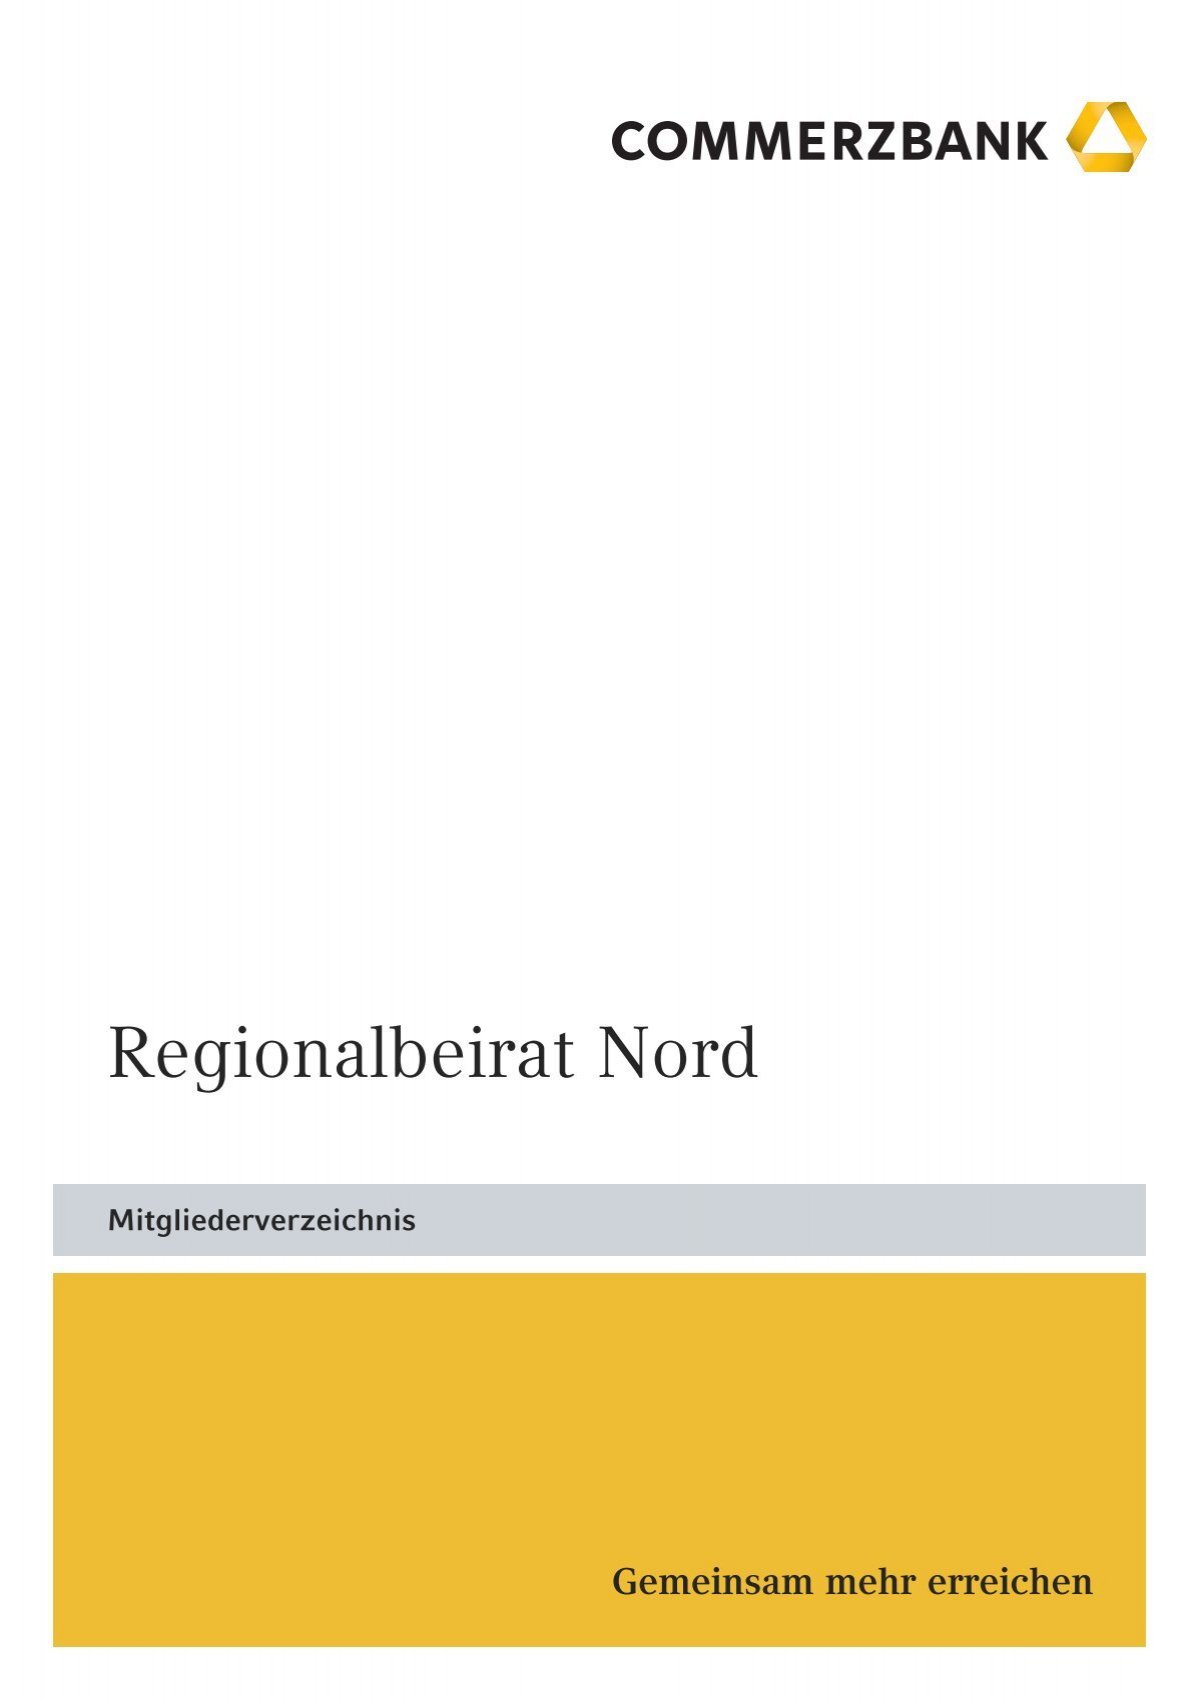 Regionalbeirat Nord Commerzbank